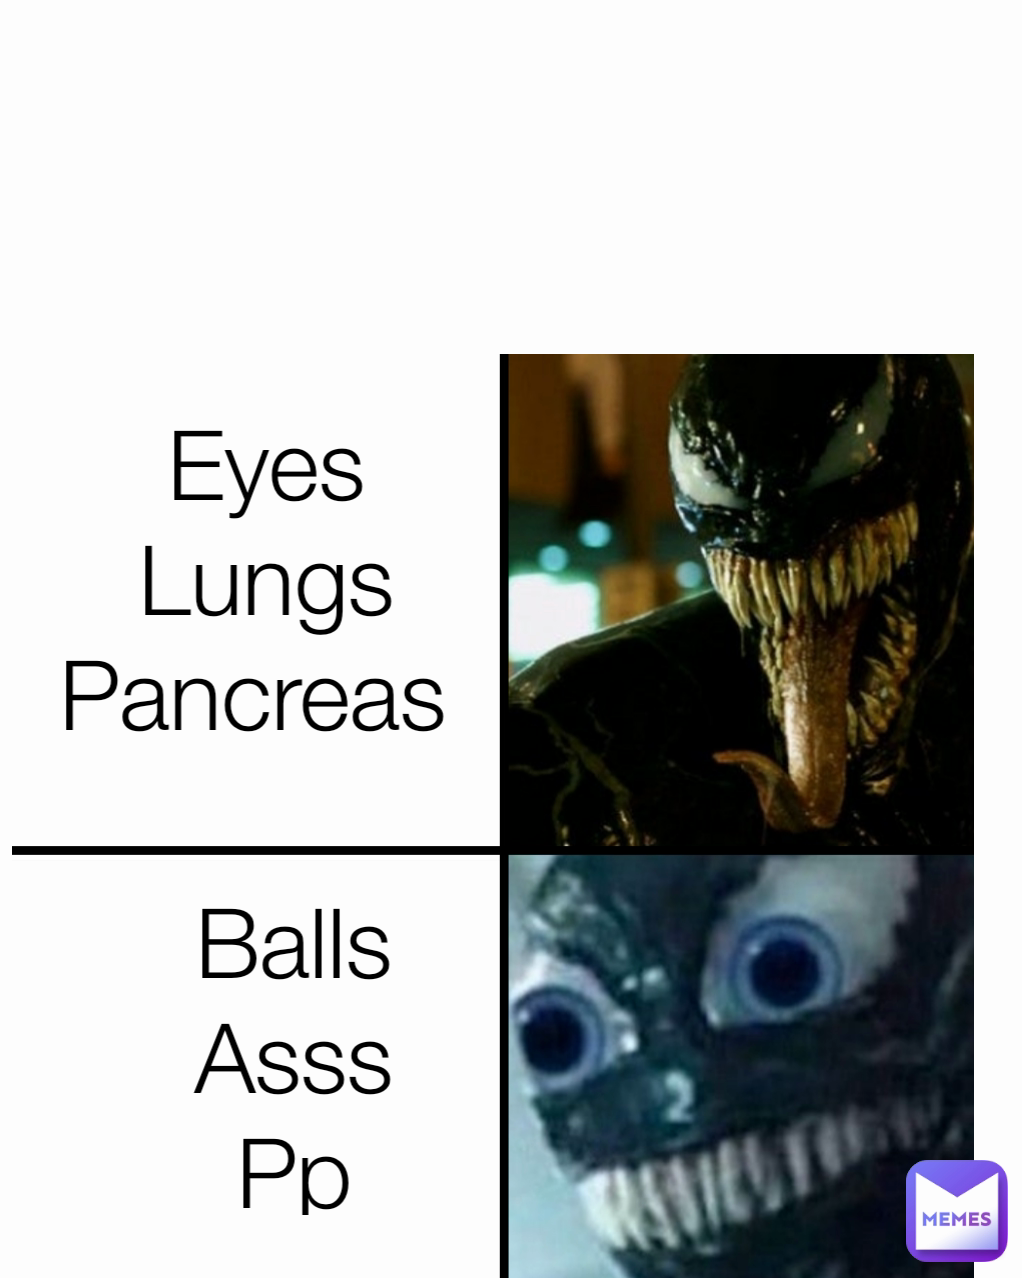 Balls
Asss
Pp Eyes
Lungs
Pancreas 